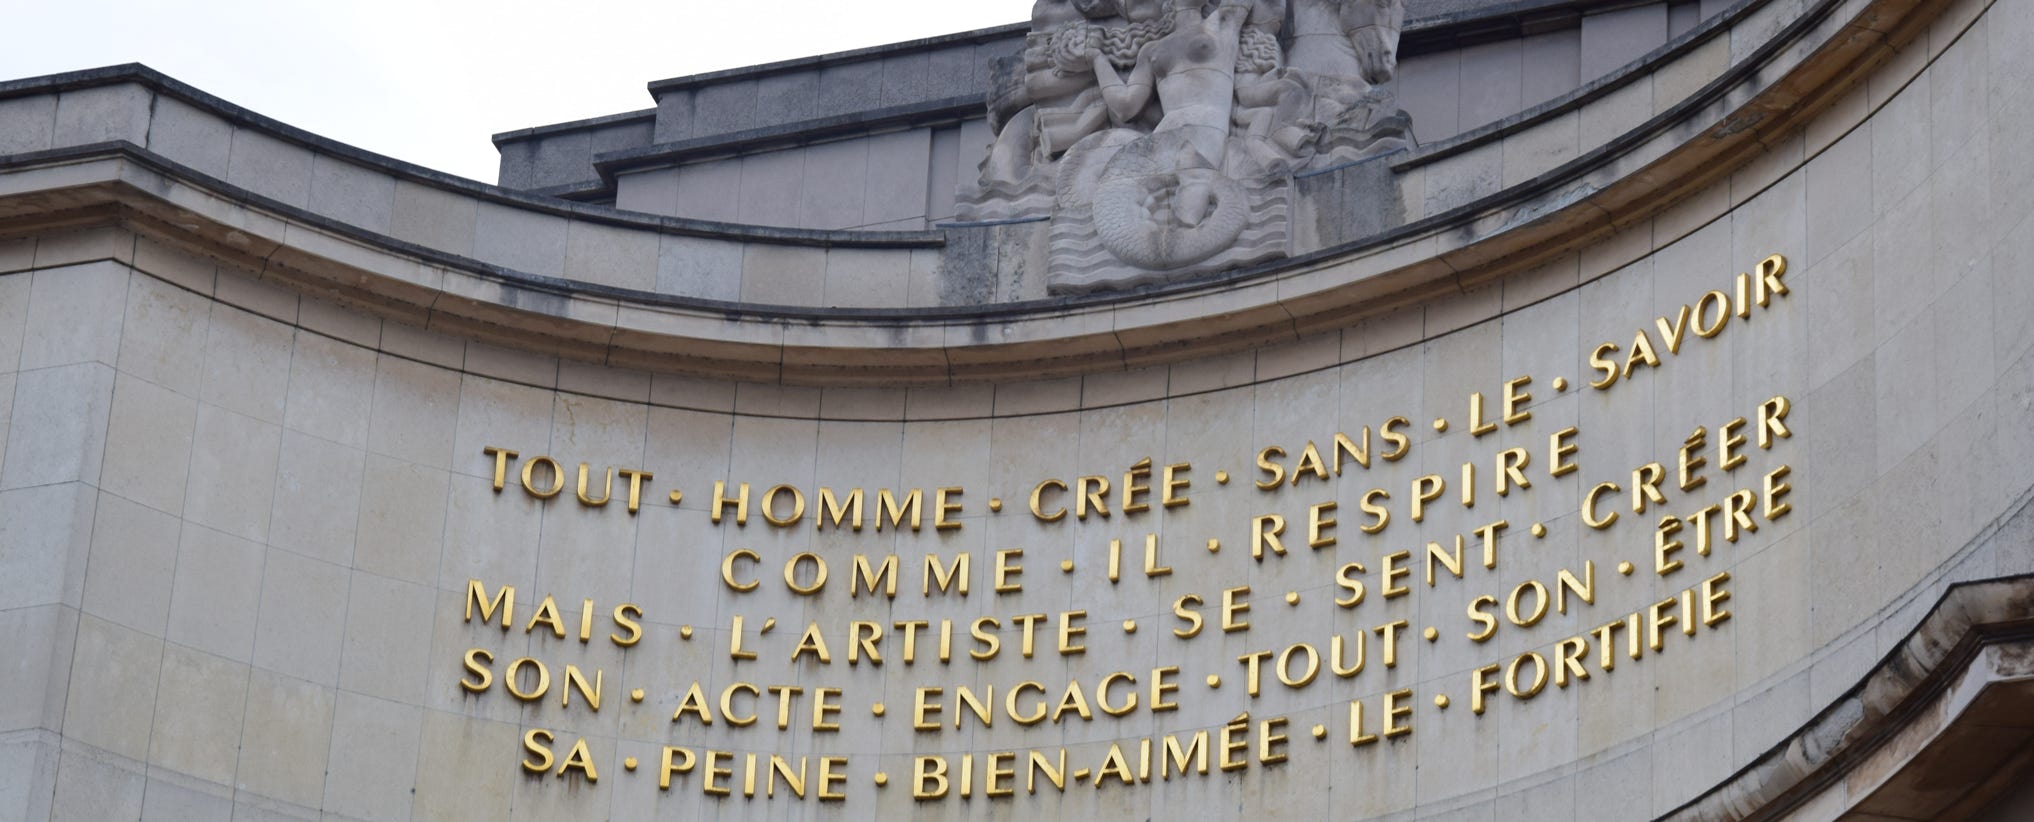 Palais Chaillot, Musée de l'Homme, Paris. Foto A.A.Bispo